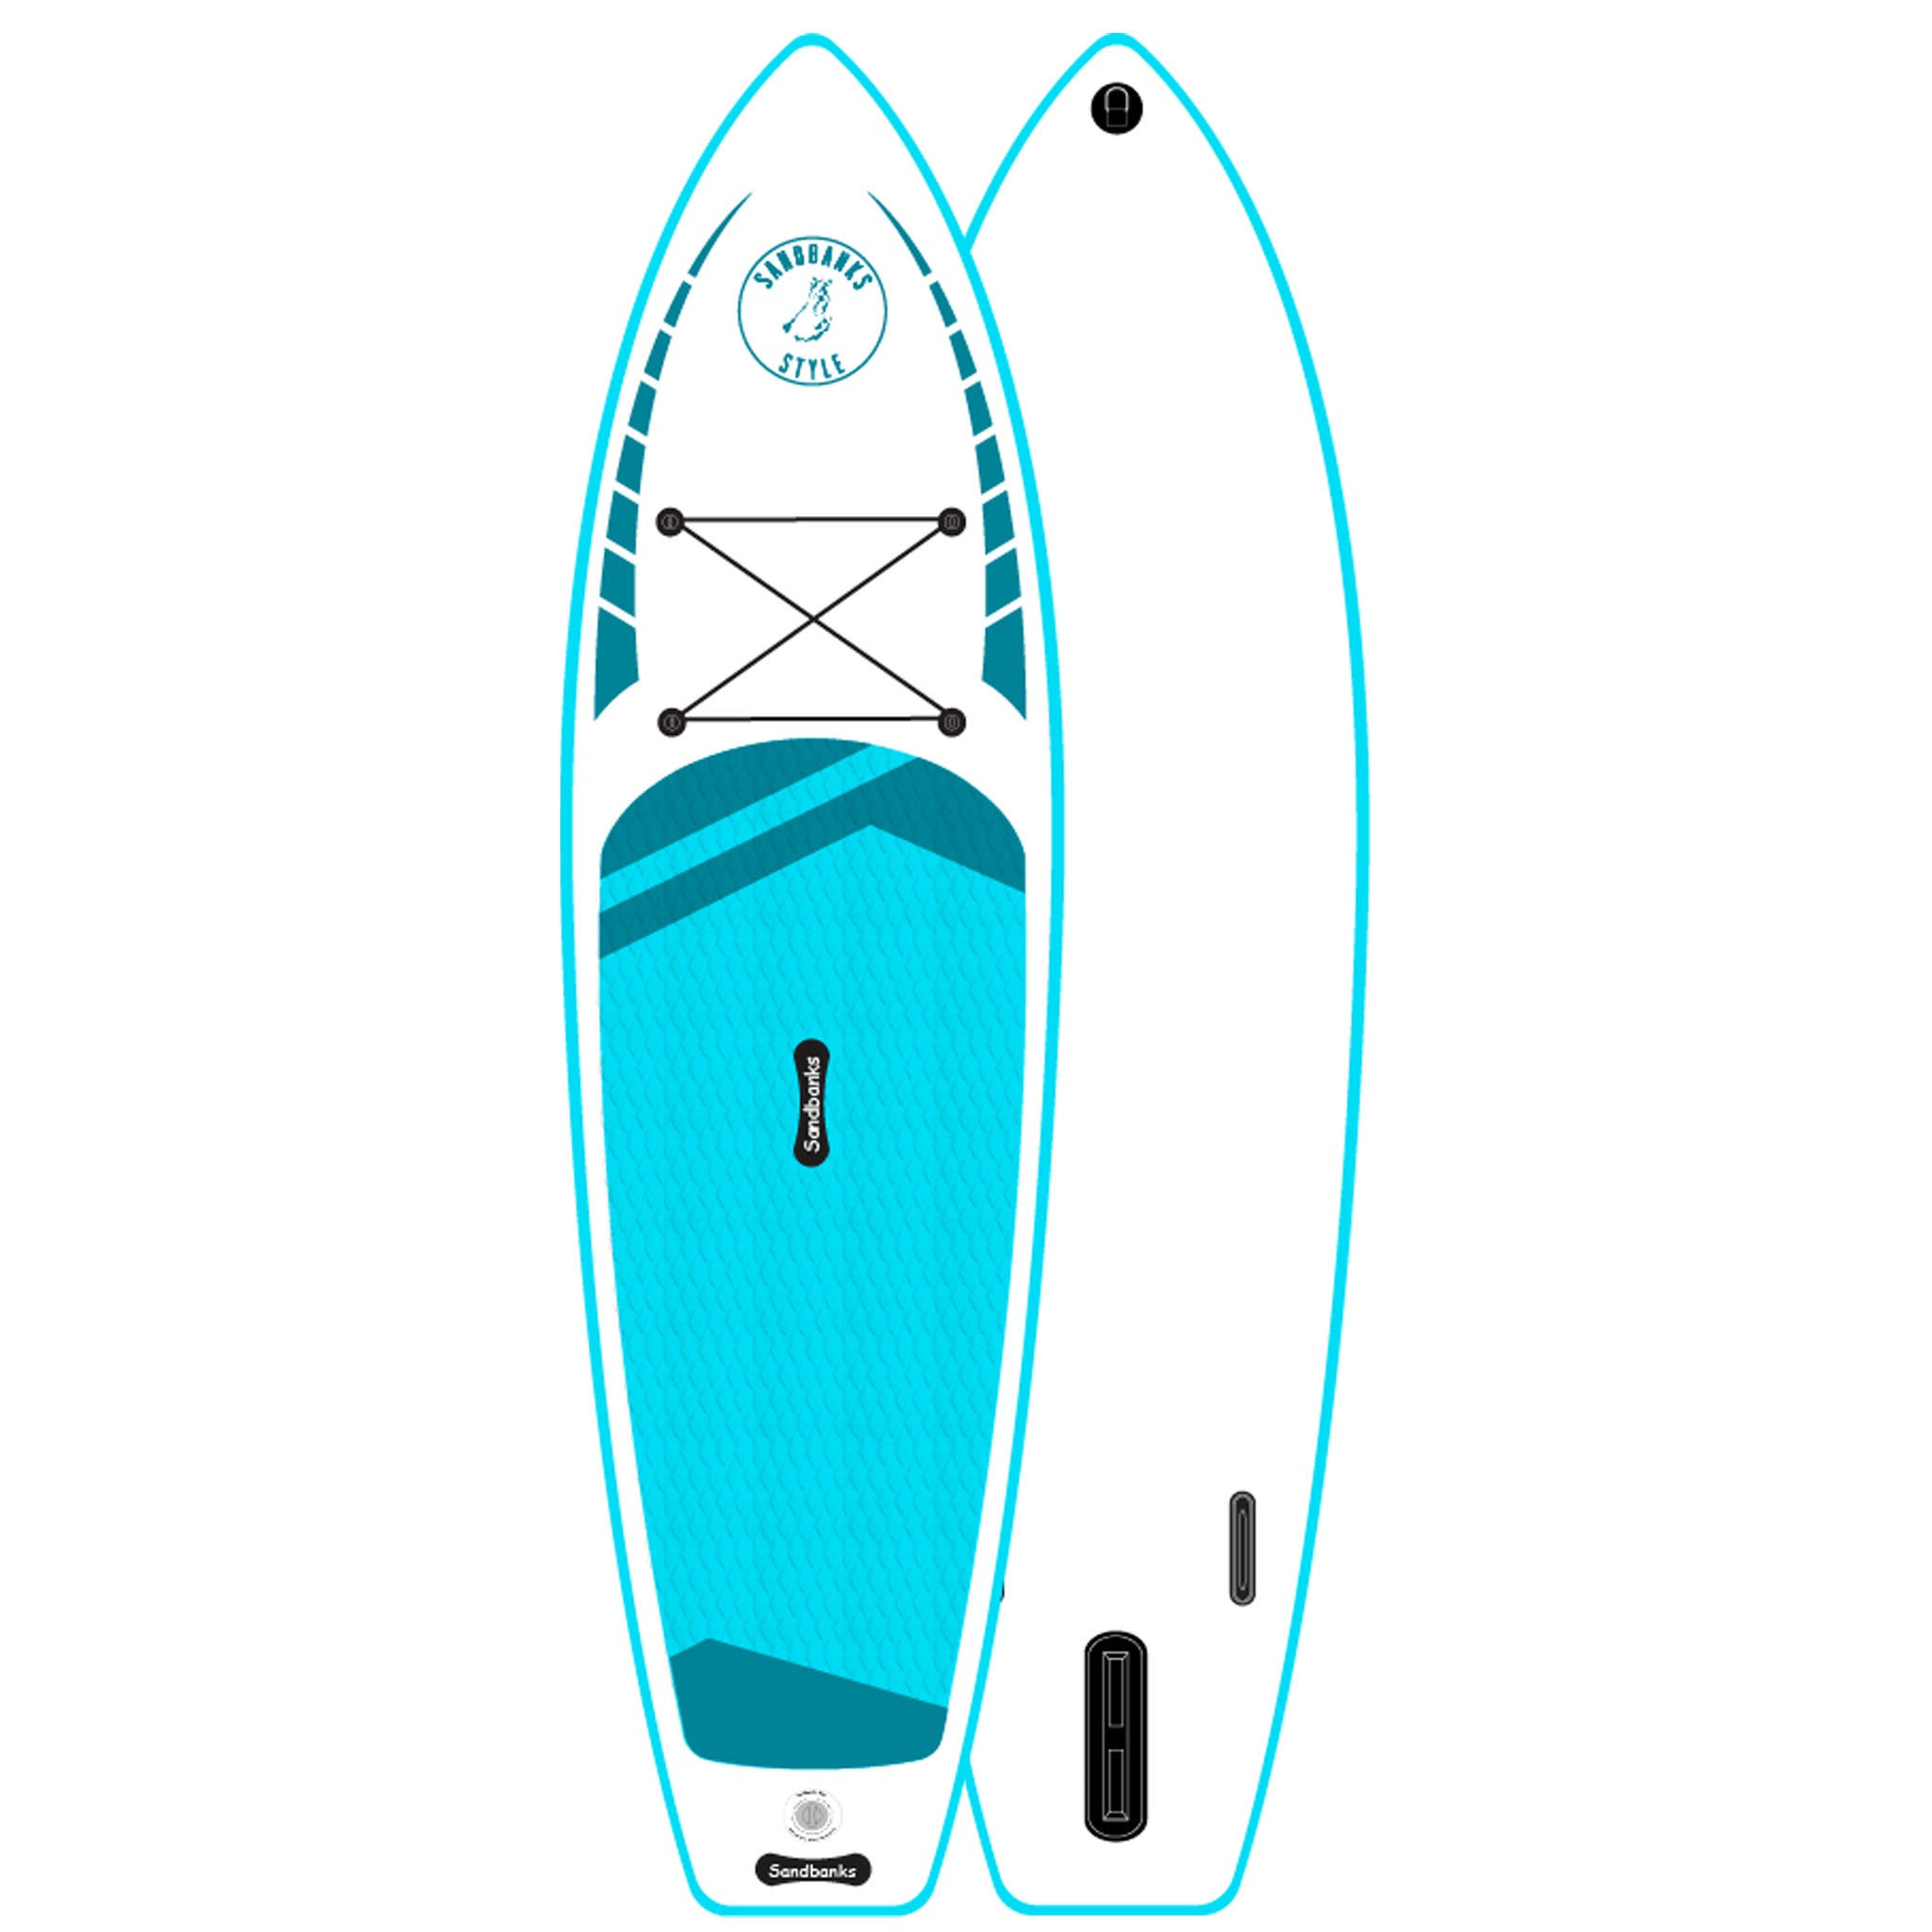 Sandbanks Elite PRO 10' 6" iSUP Paddle Board Turquoise